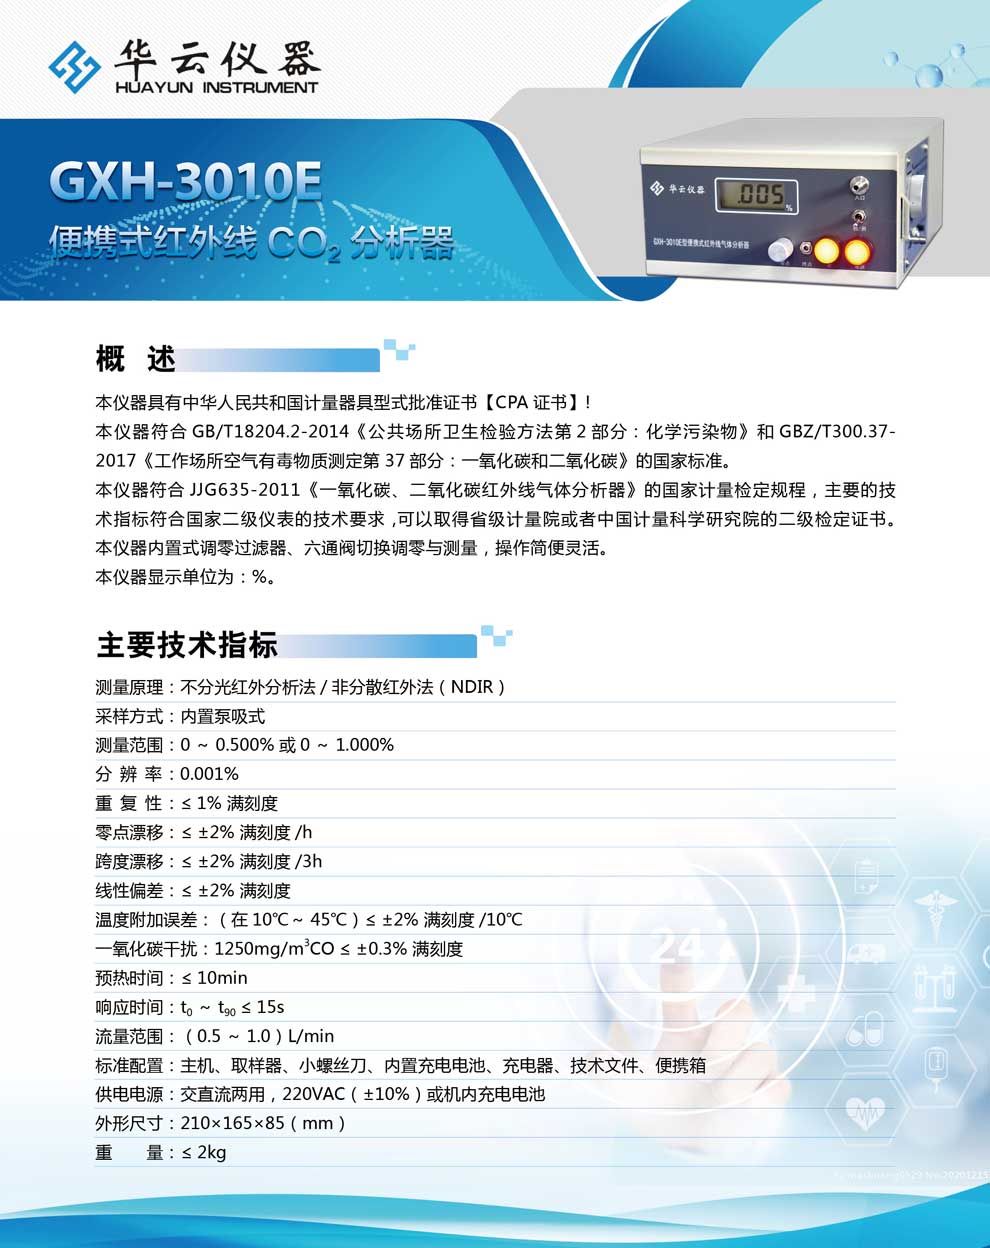 GXH-3010E系列-彩页.jpg